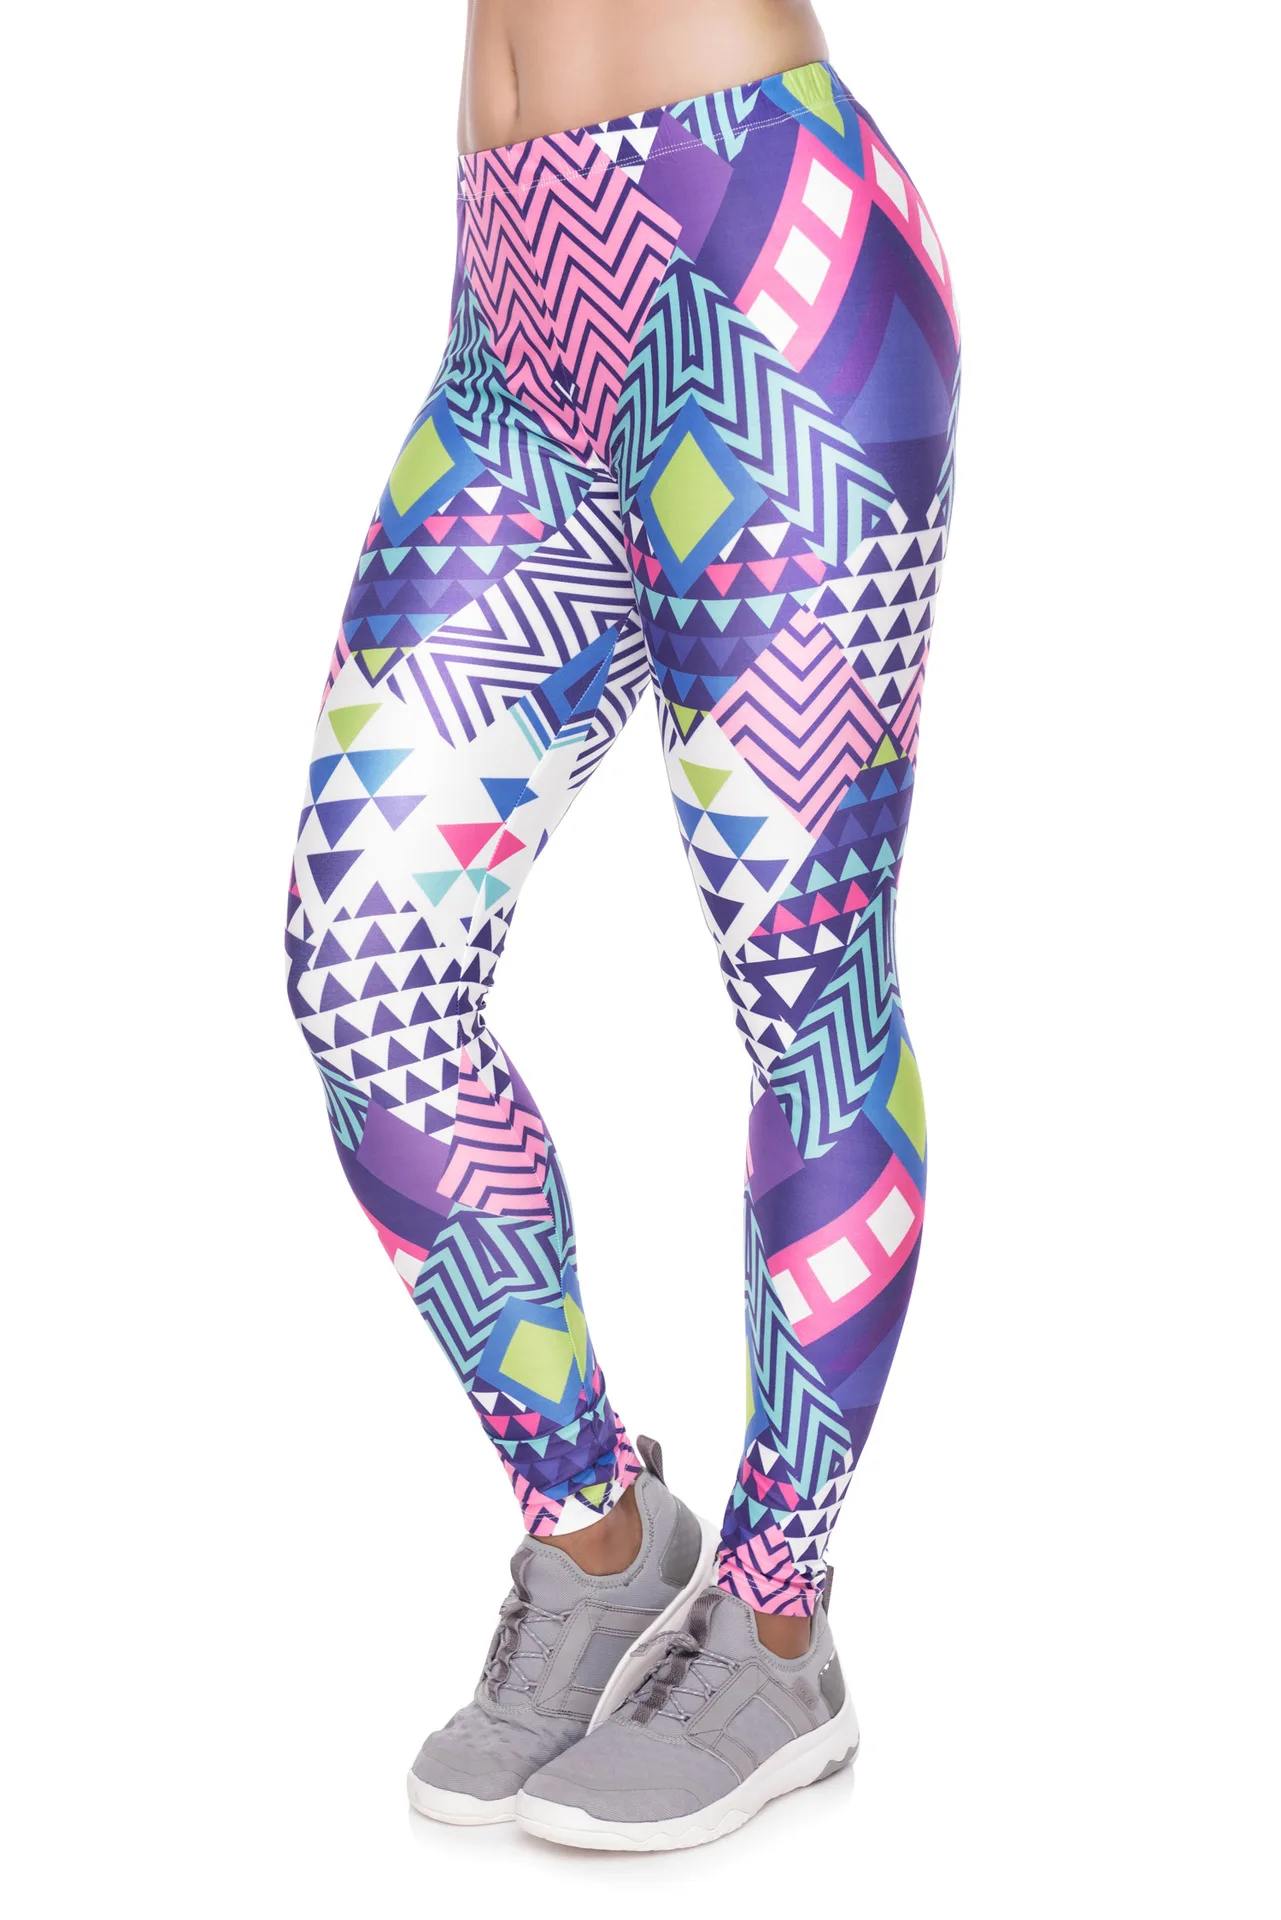 Цветные спортивные Леггинсы с геометрическими фигурами, модные штаны, высокая талия, для тренировок, бега, для женщин, для спорта и отдыха, тренировочные леггинсы